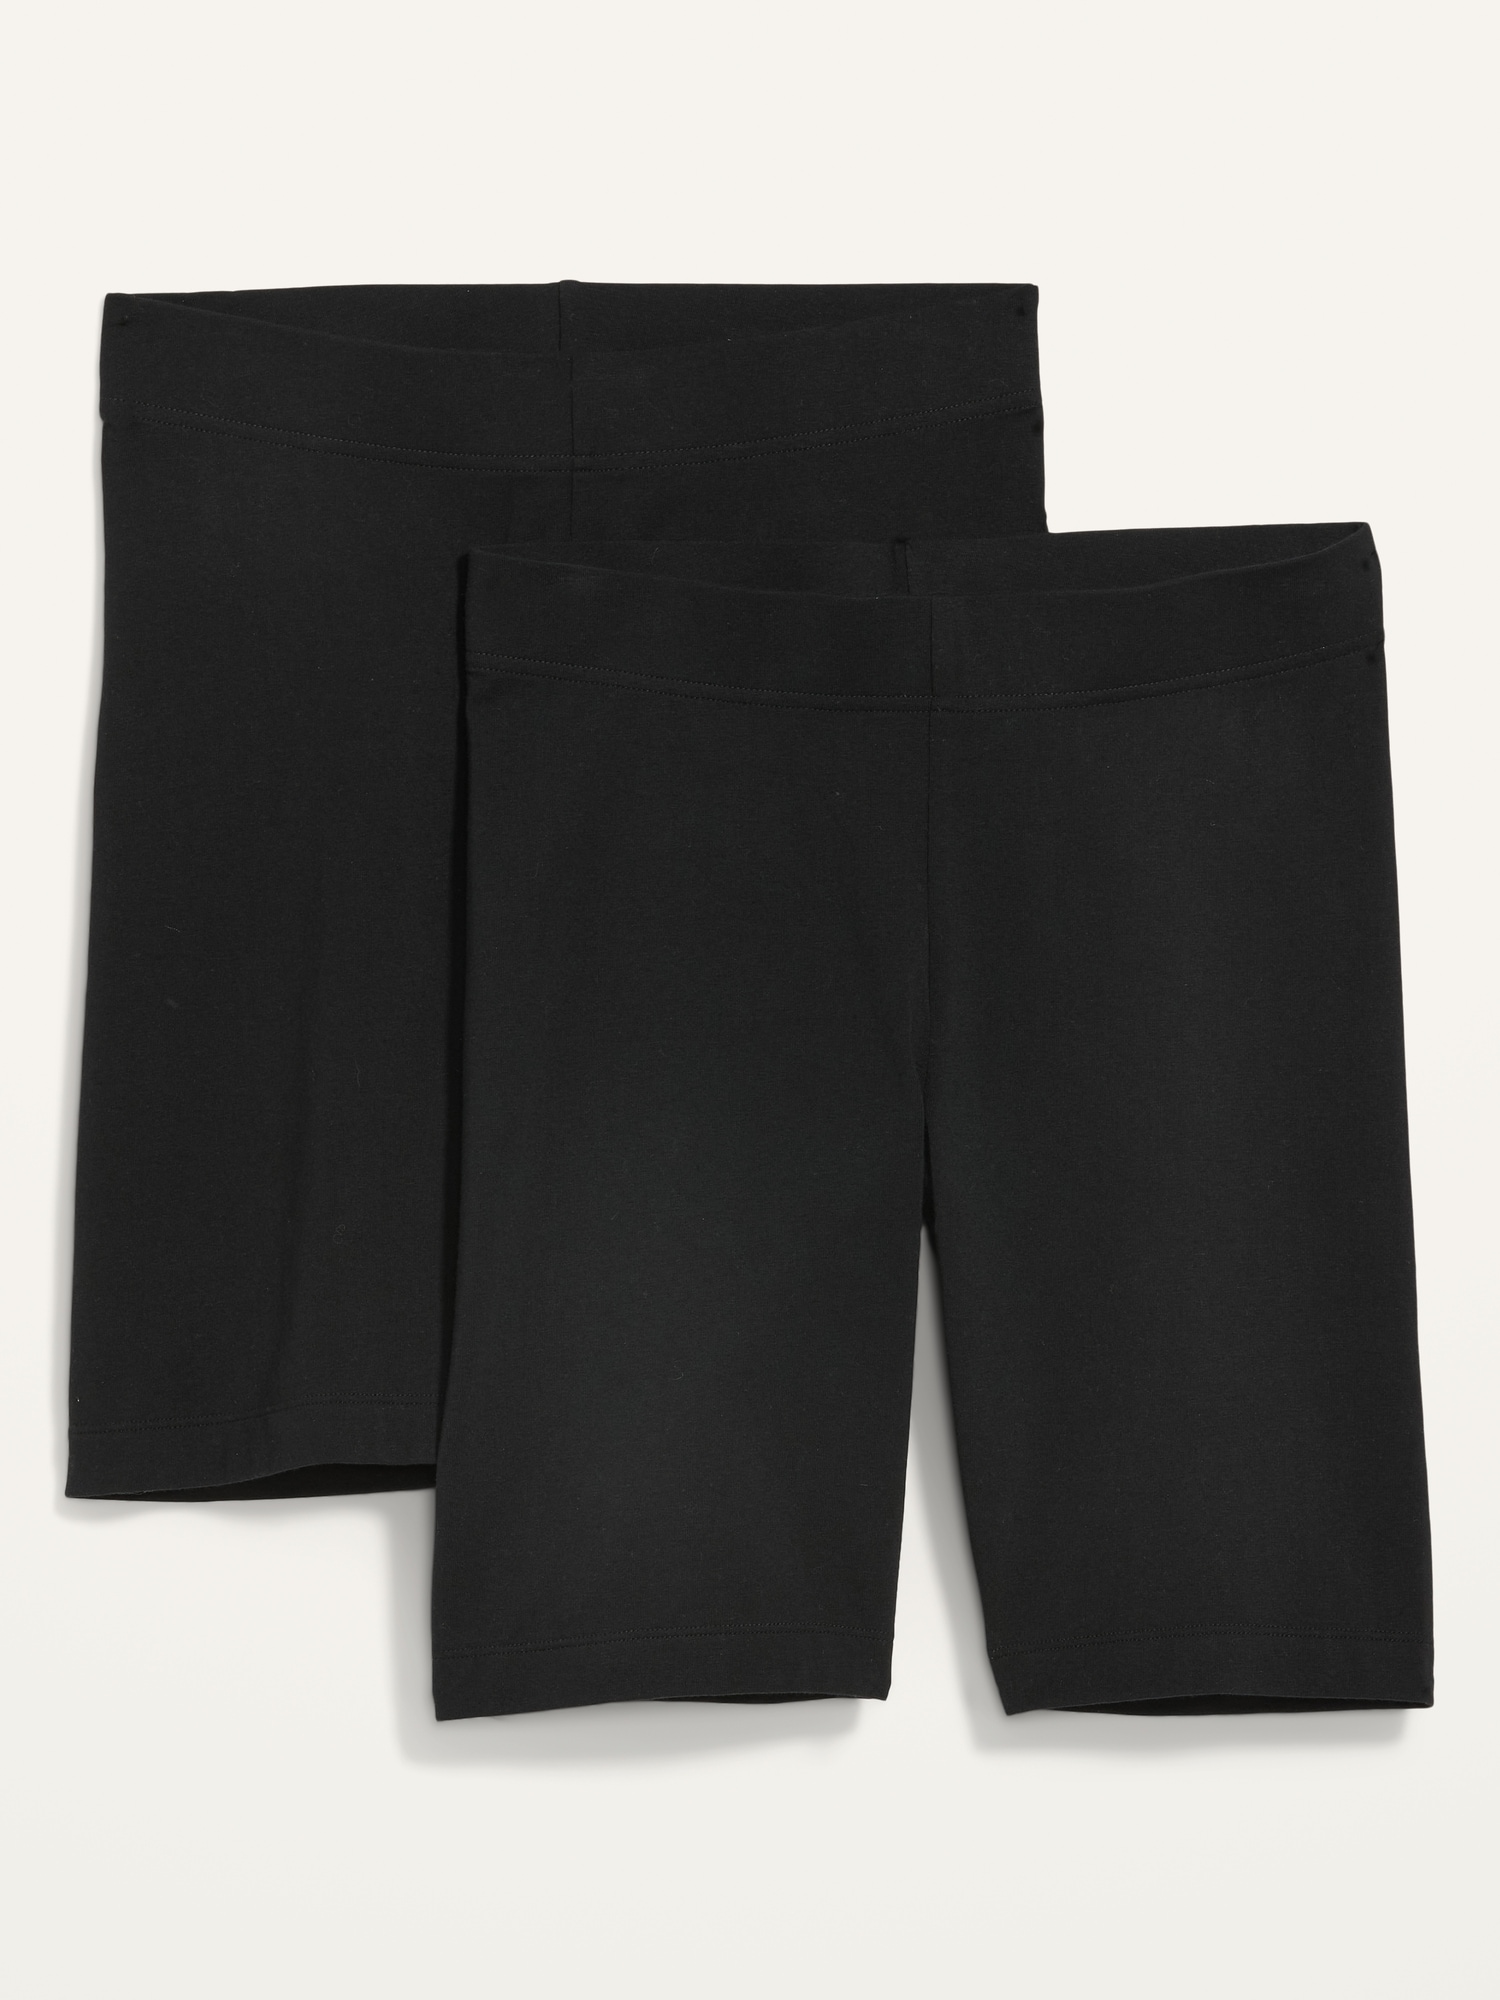 High-Waisted Biker Shorts 2-Pack for Women -- 8-inch inseam Hot Deal